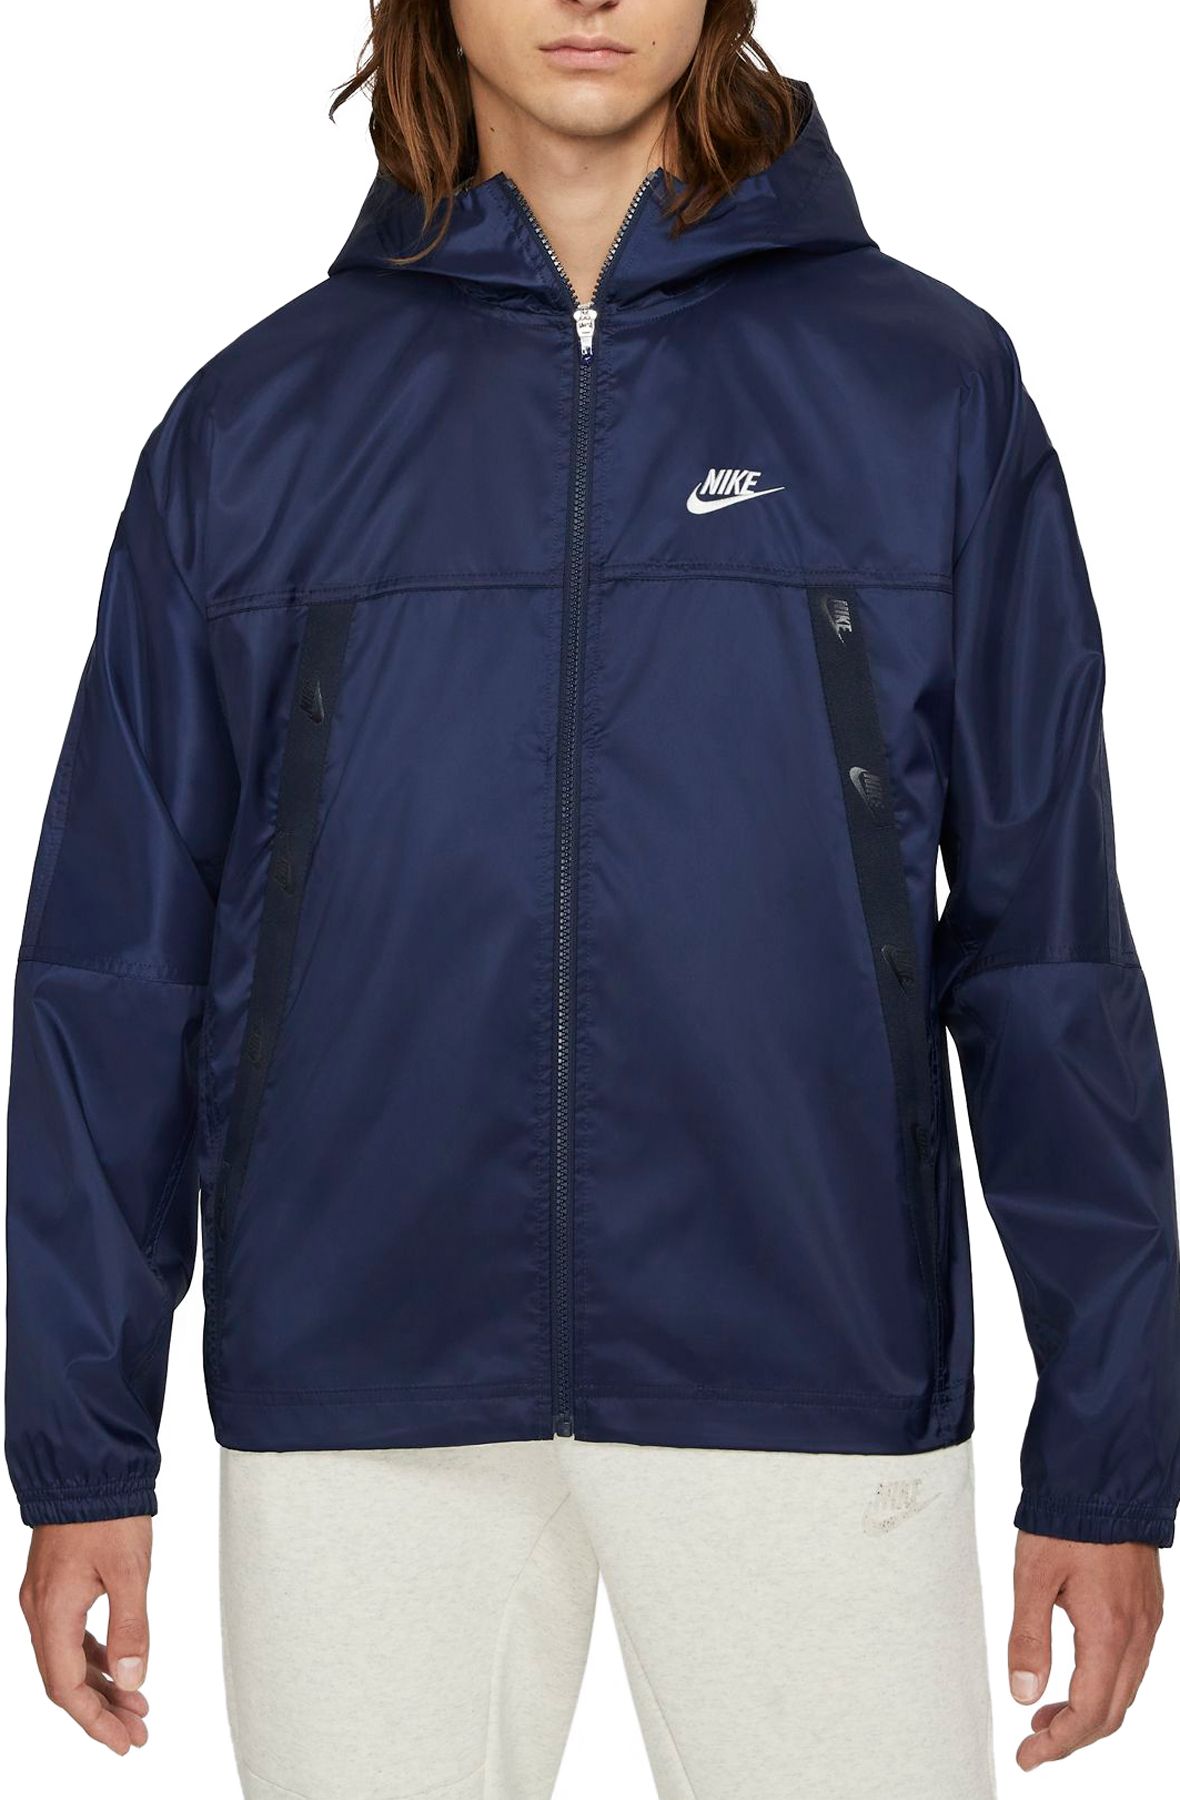 NIKE Sportswear Revival Lightweight Woven Jacket DC6977 451 - Shiekh